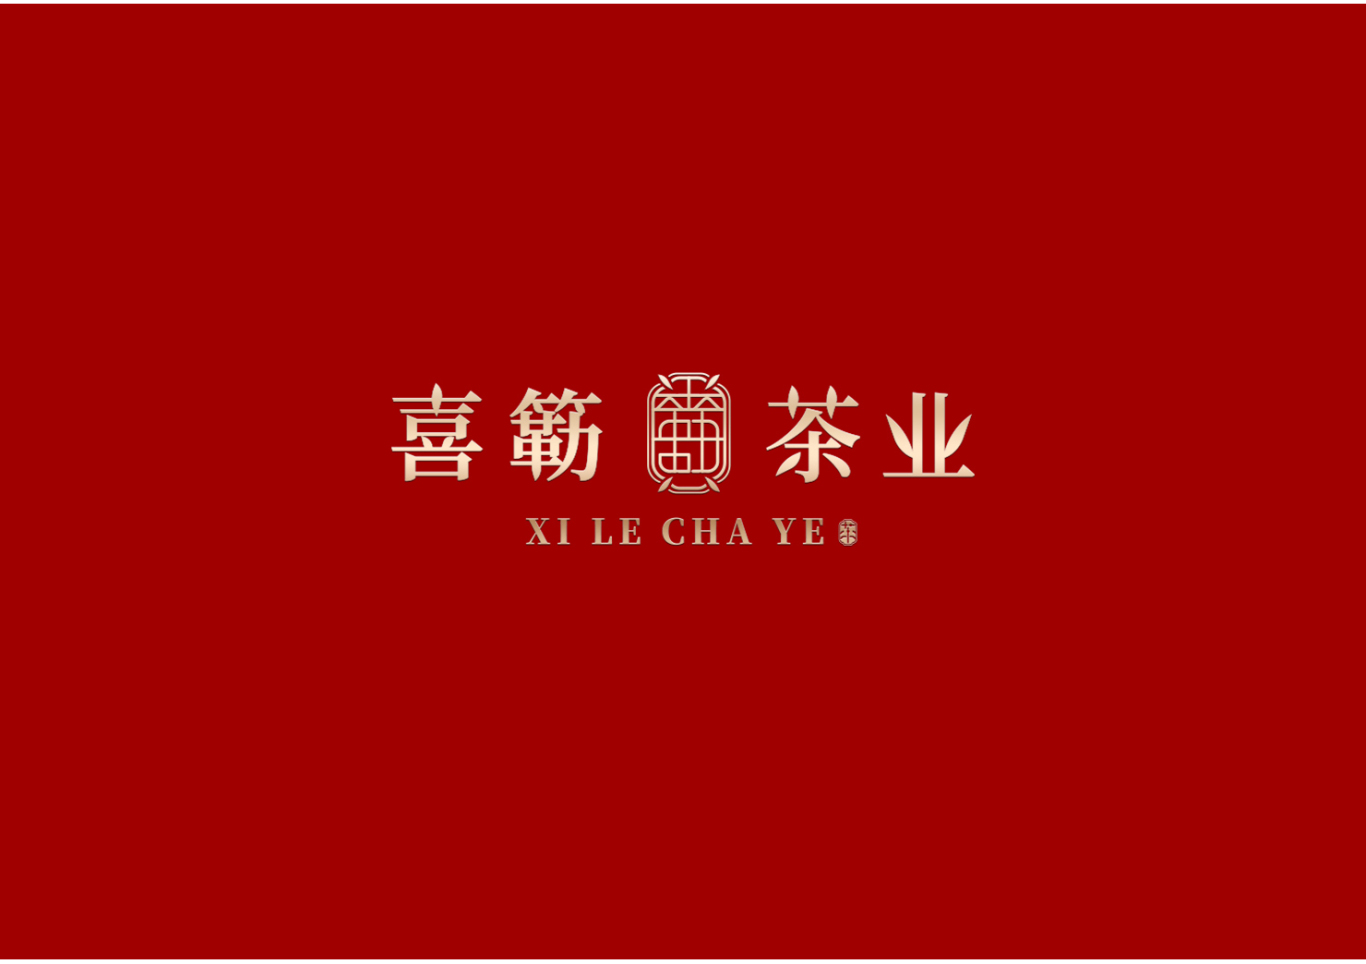 喜簕茶叶—茶叶品牌形象设计图3